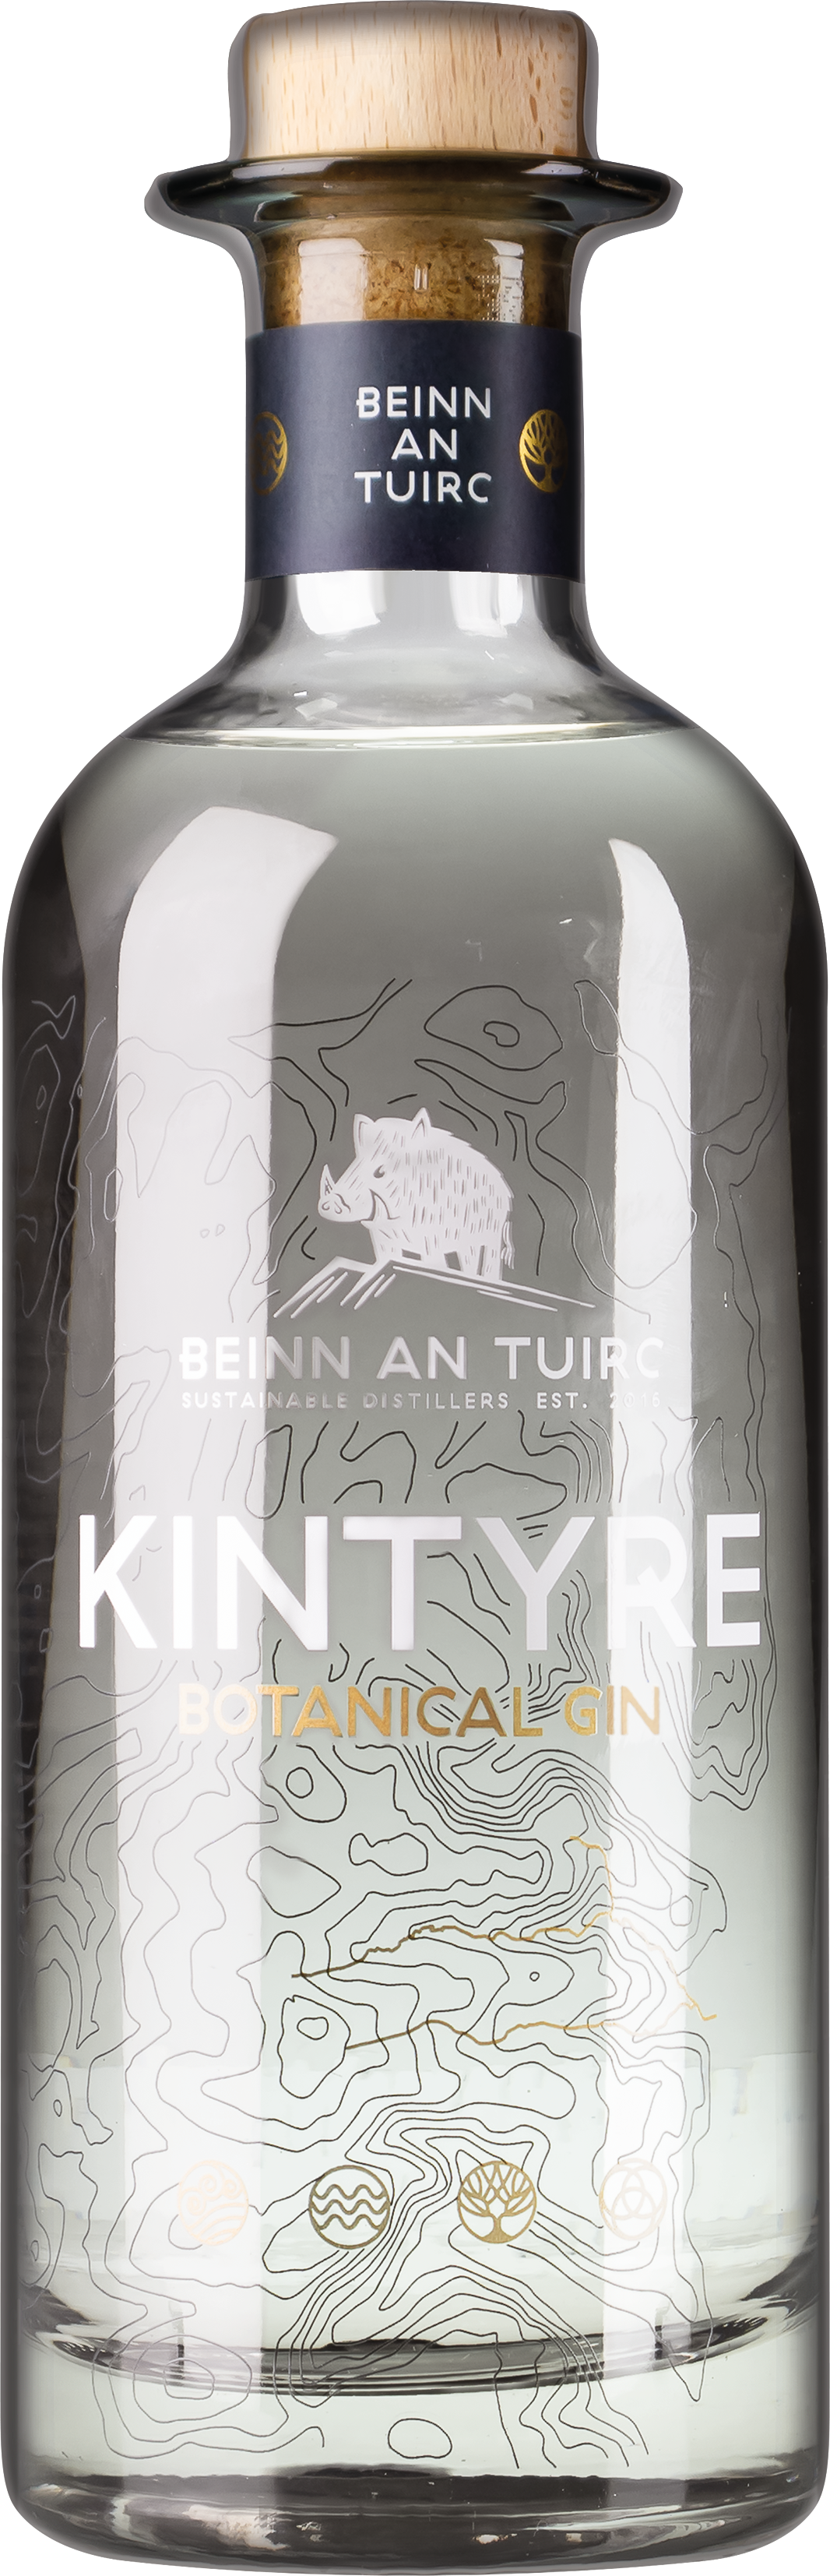 Flasche Kintyre Gin der Beinn an Tuirc Distillery